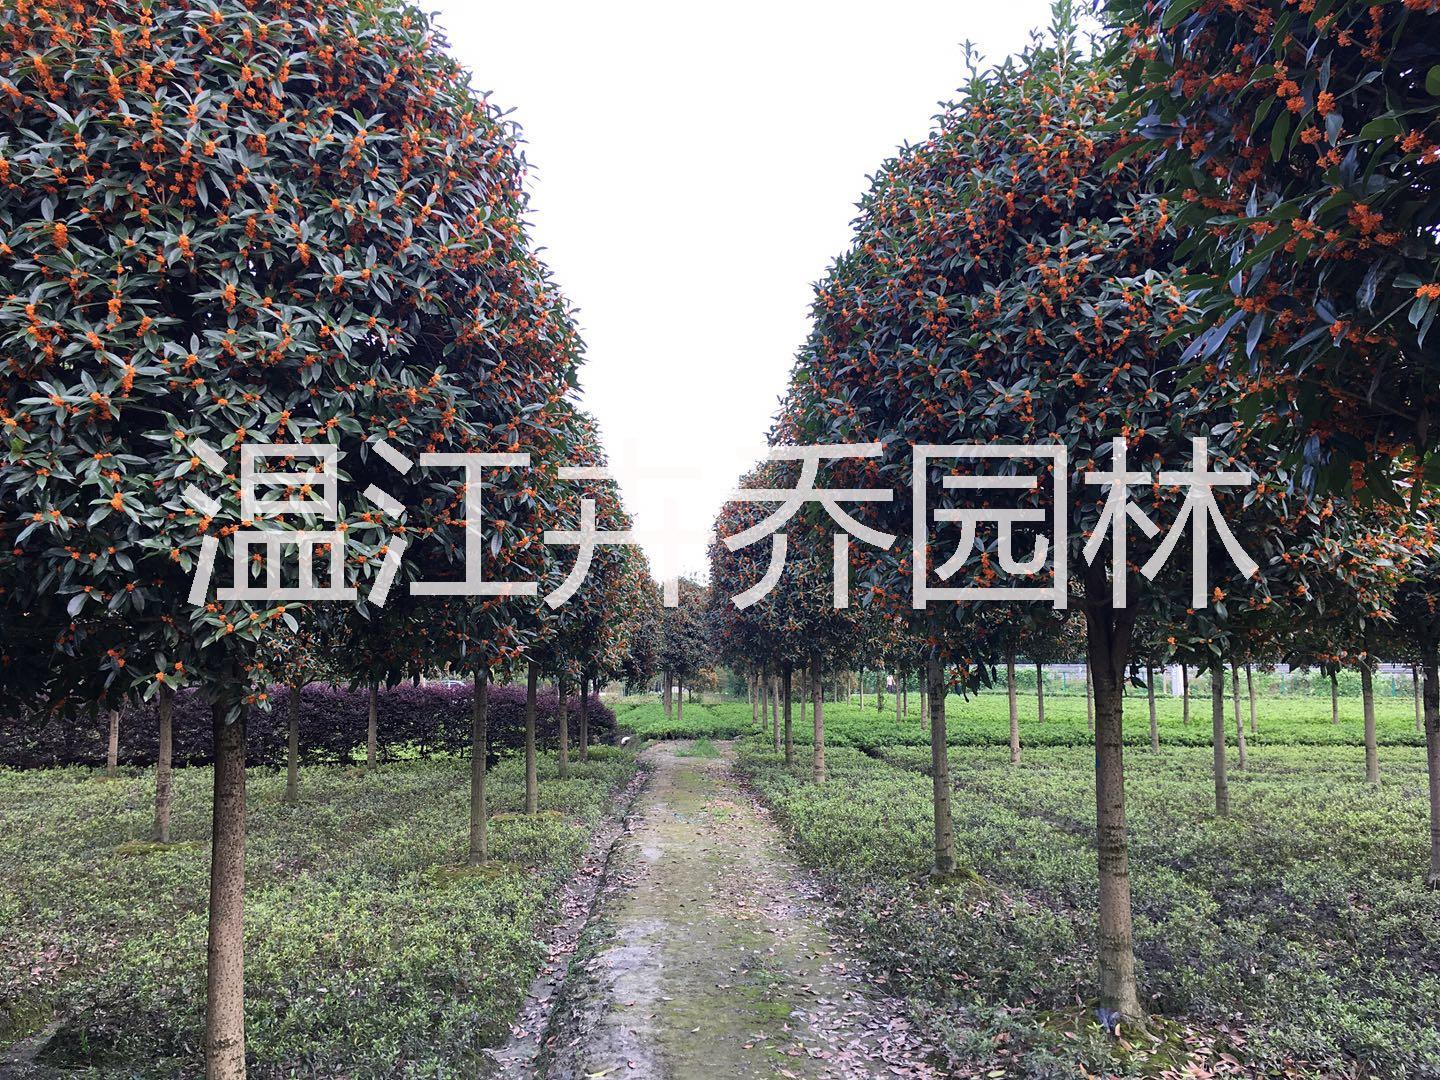 2019年四川成都精品高杆桂花树品种分类及图片展示